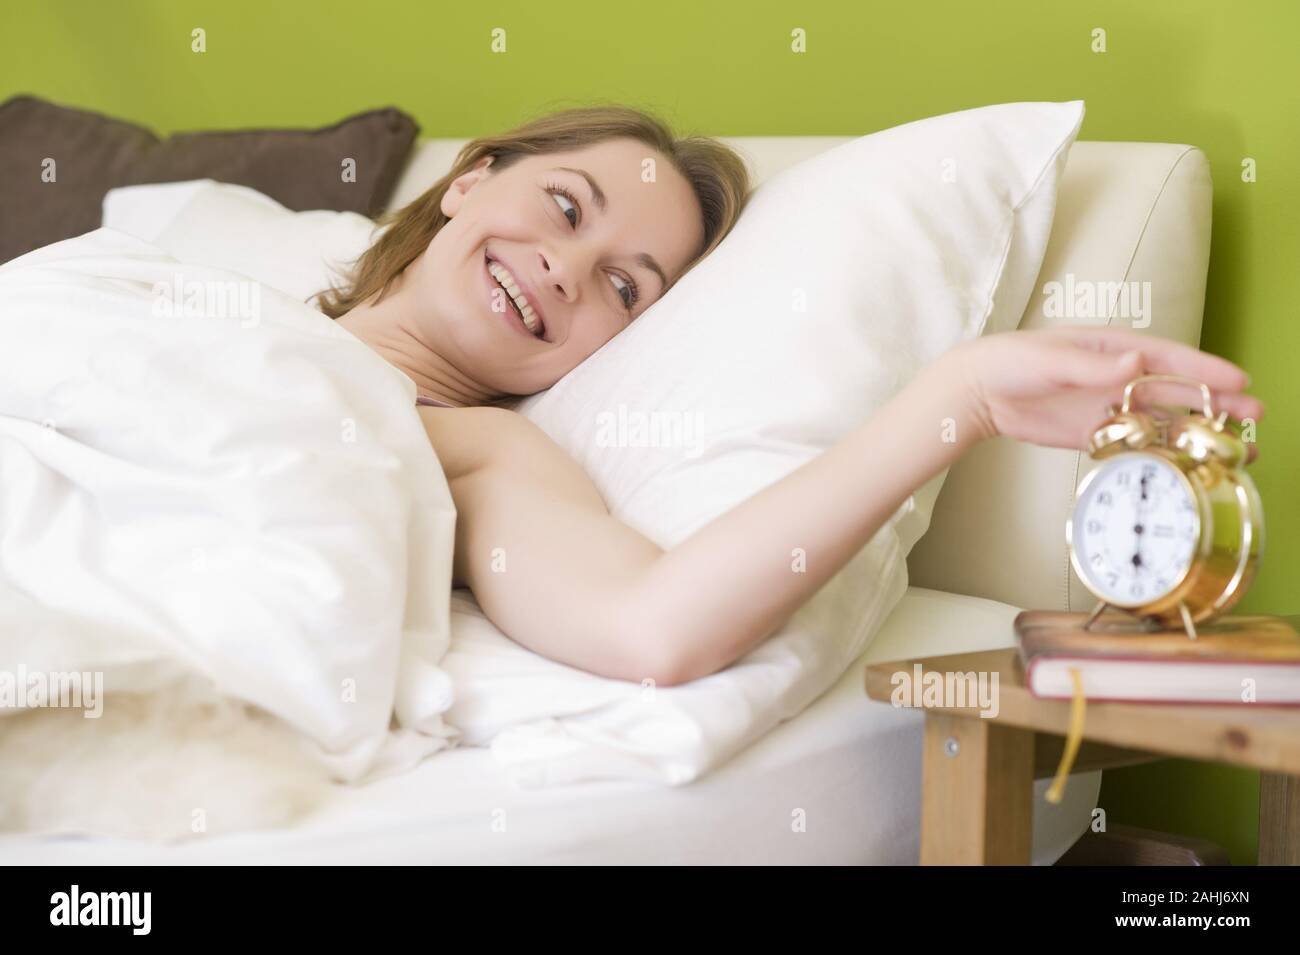 25 -30 jährige Frau schläft Bett im, zeigt ihre Füsse, señor:Yes Foto de stock